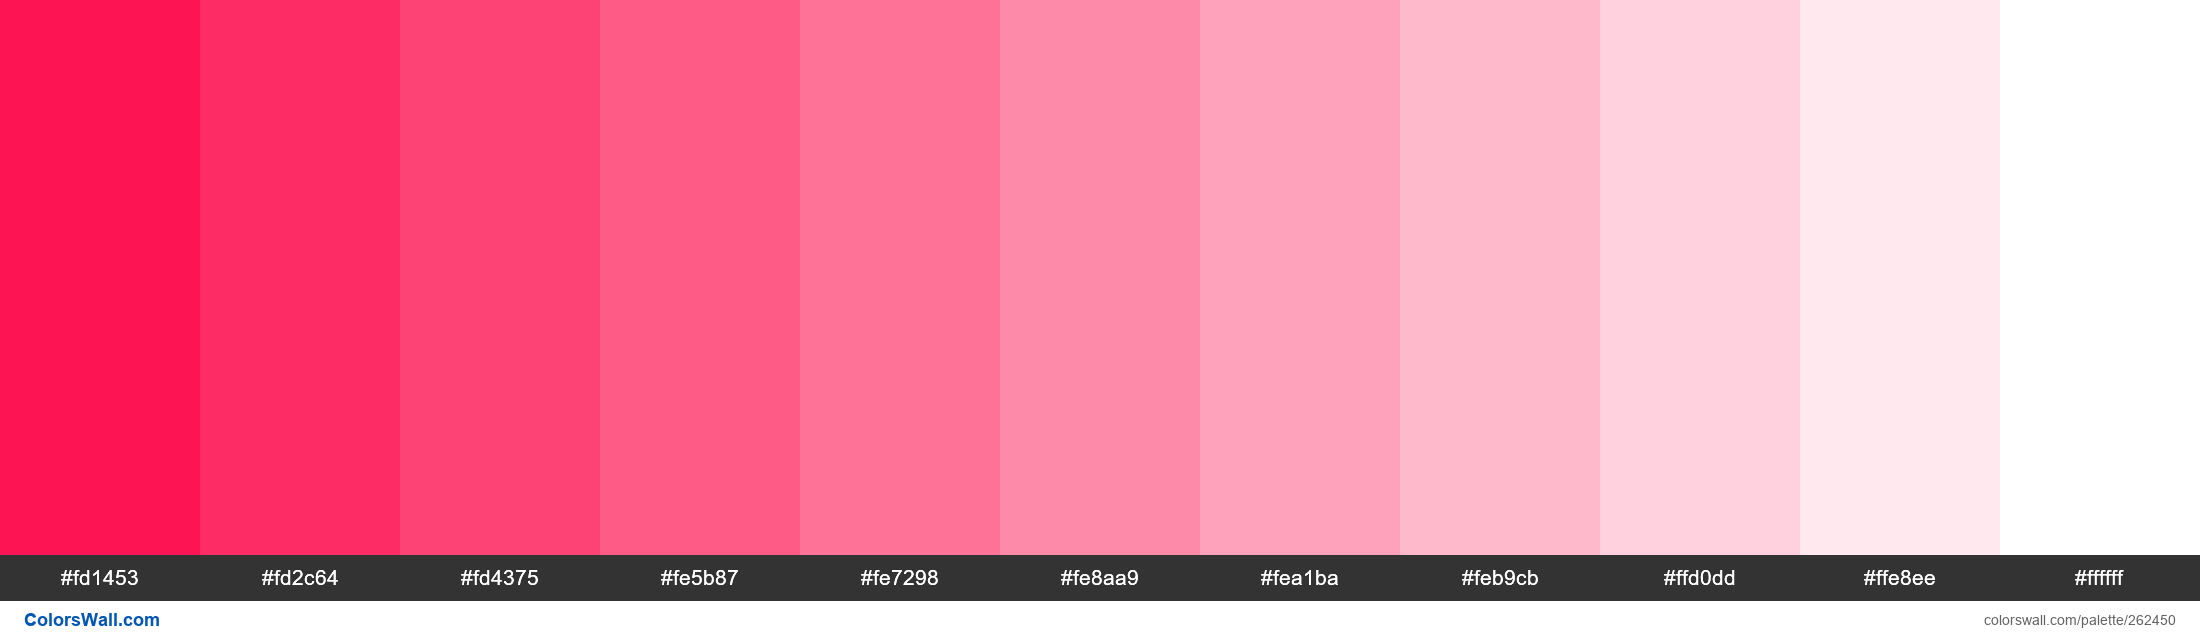 Techno Kiss colors palette - ColorsWall